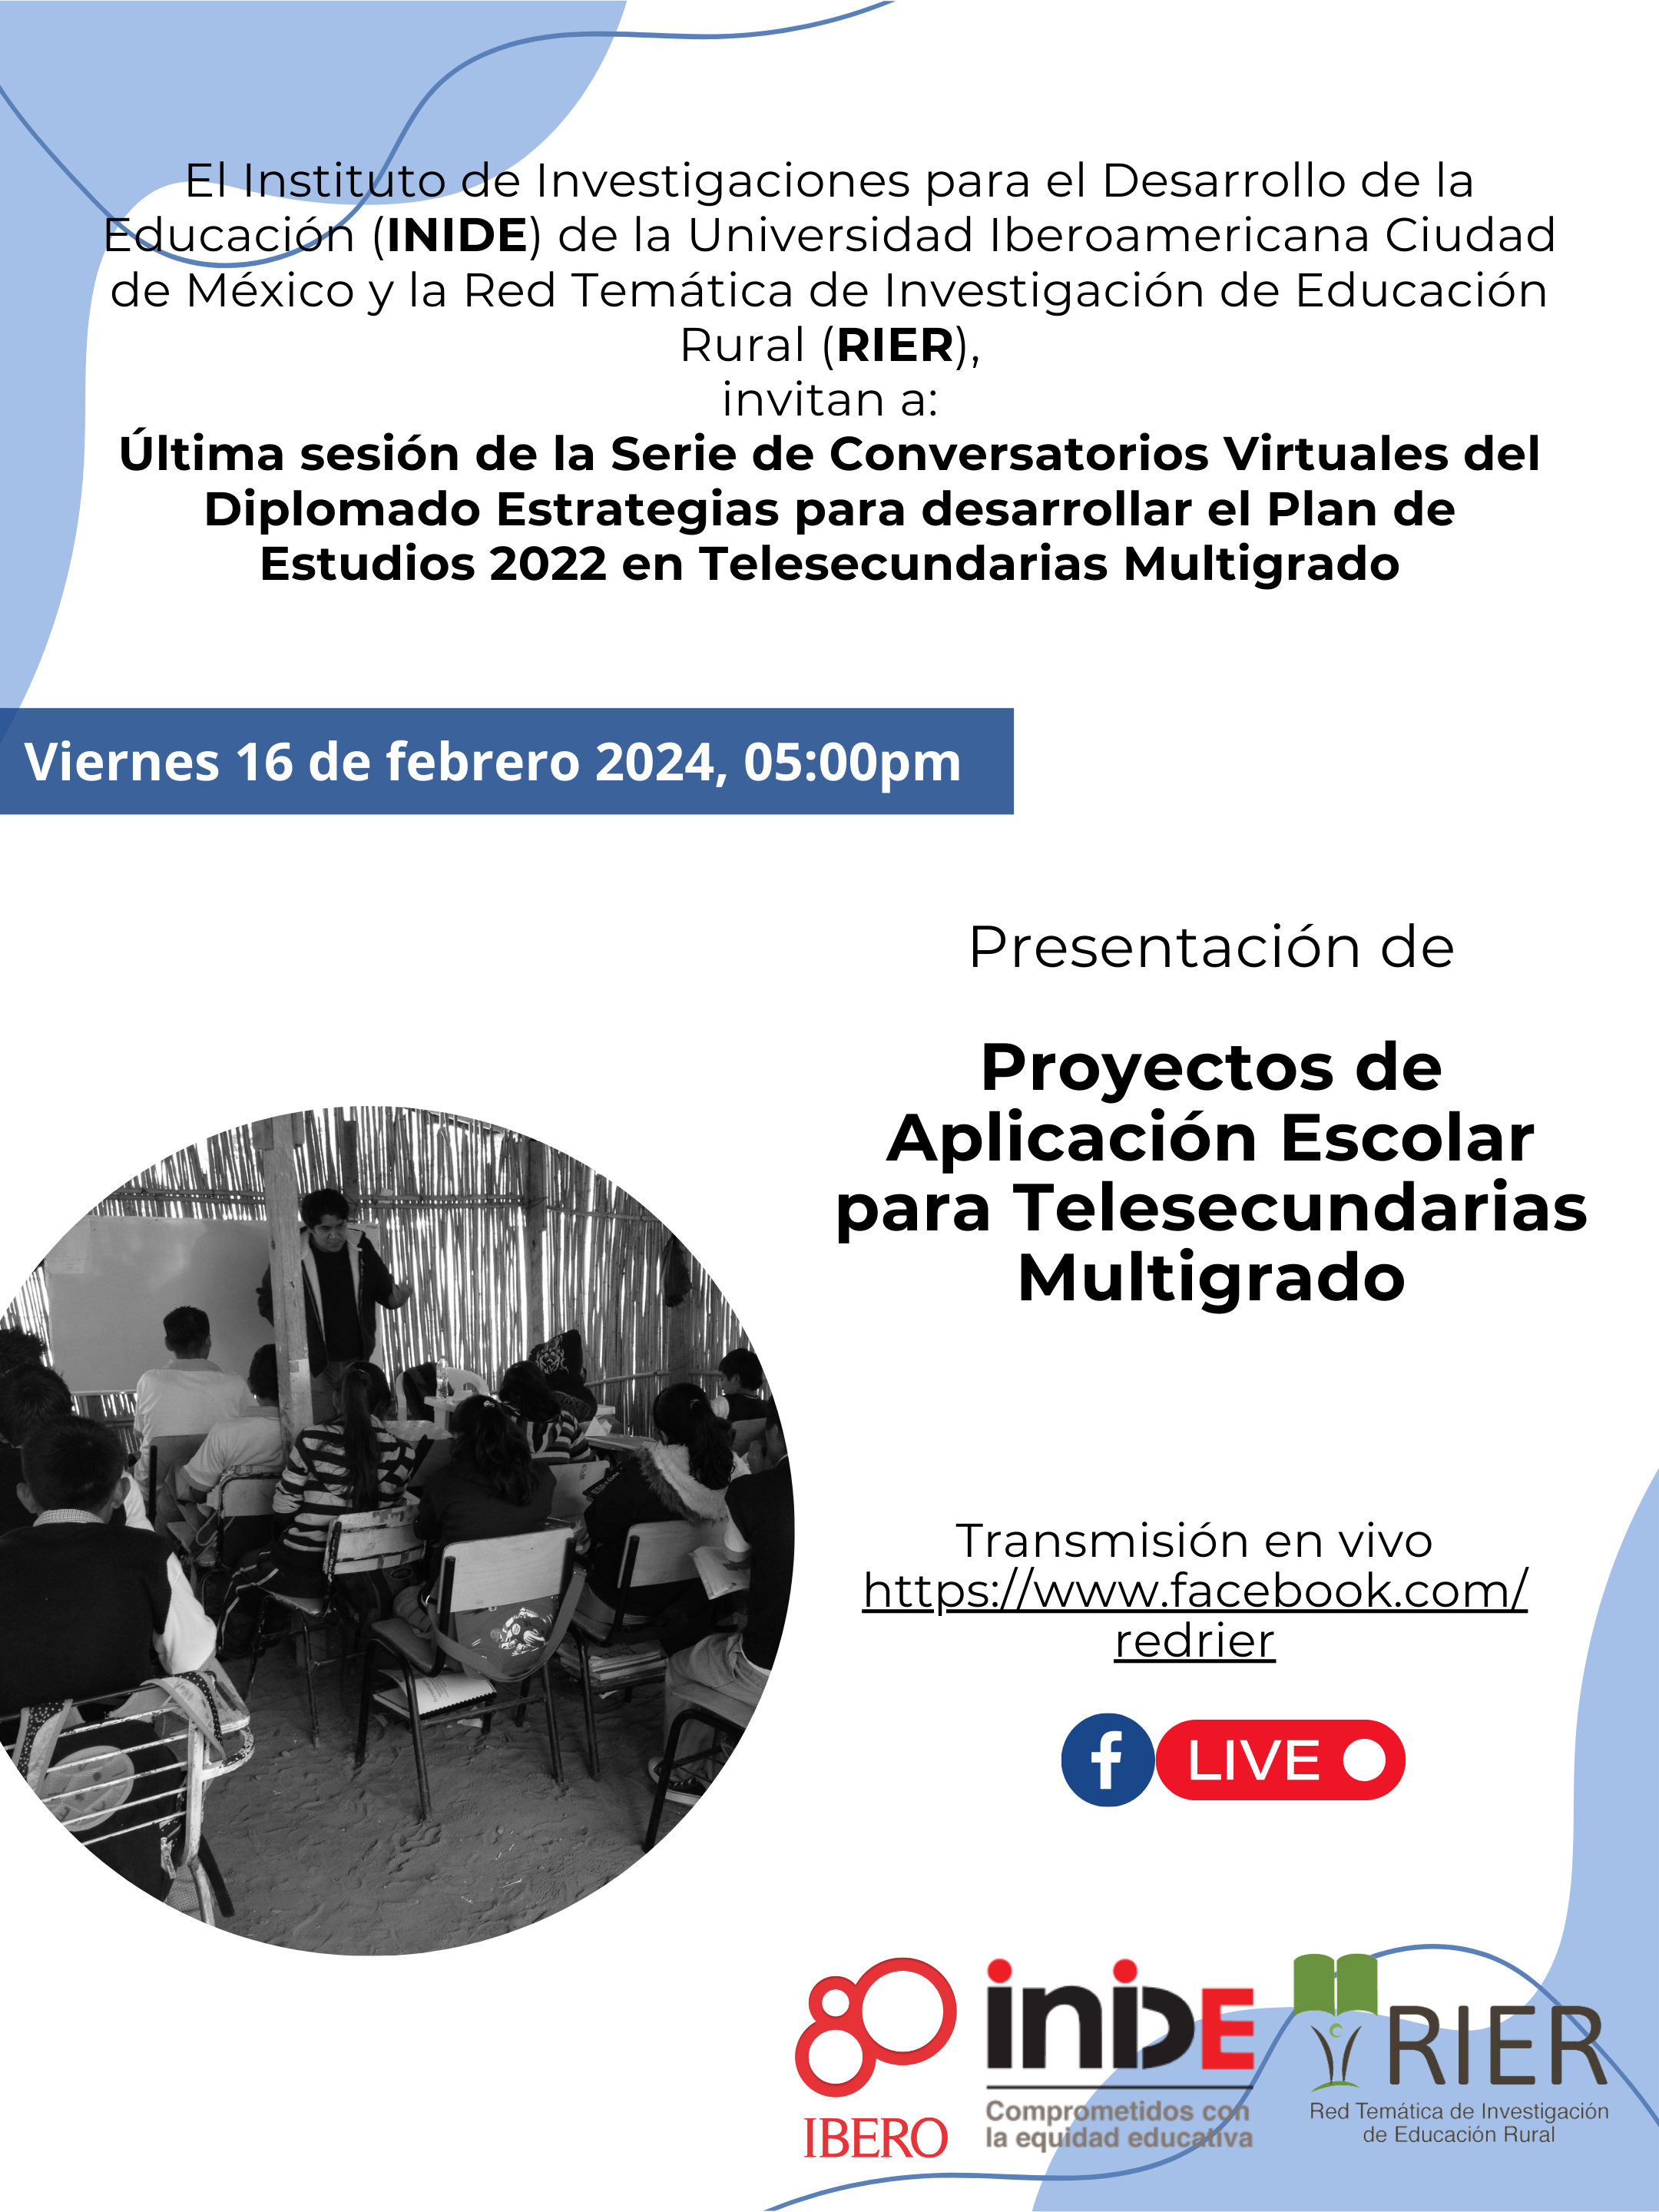 Última sesión: Conversatorios virtuales Estrategias para Desarrollar el Plan de Estudios 2022 en Telesecundarias Multigrado 